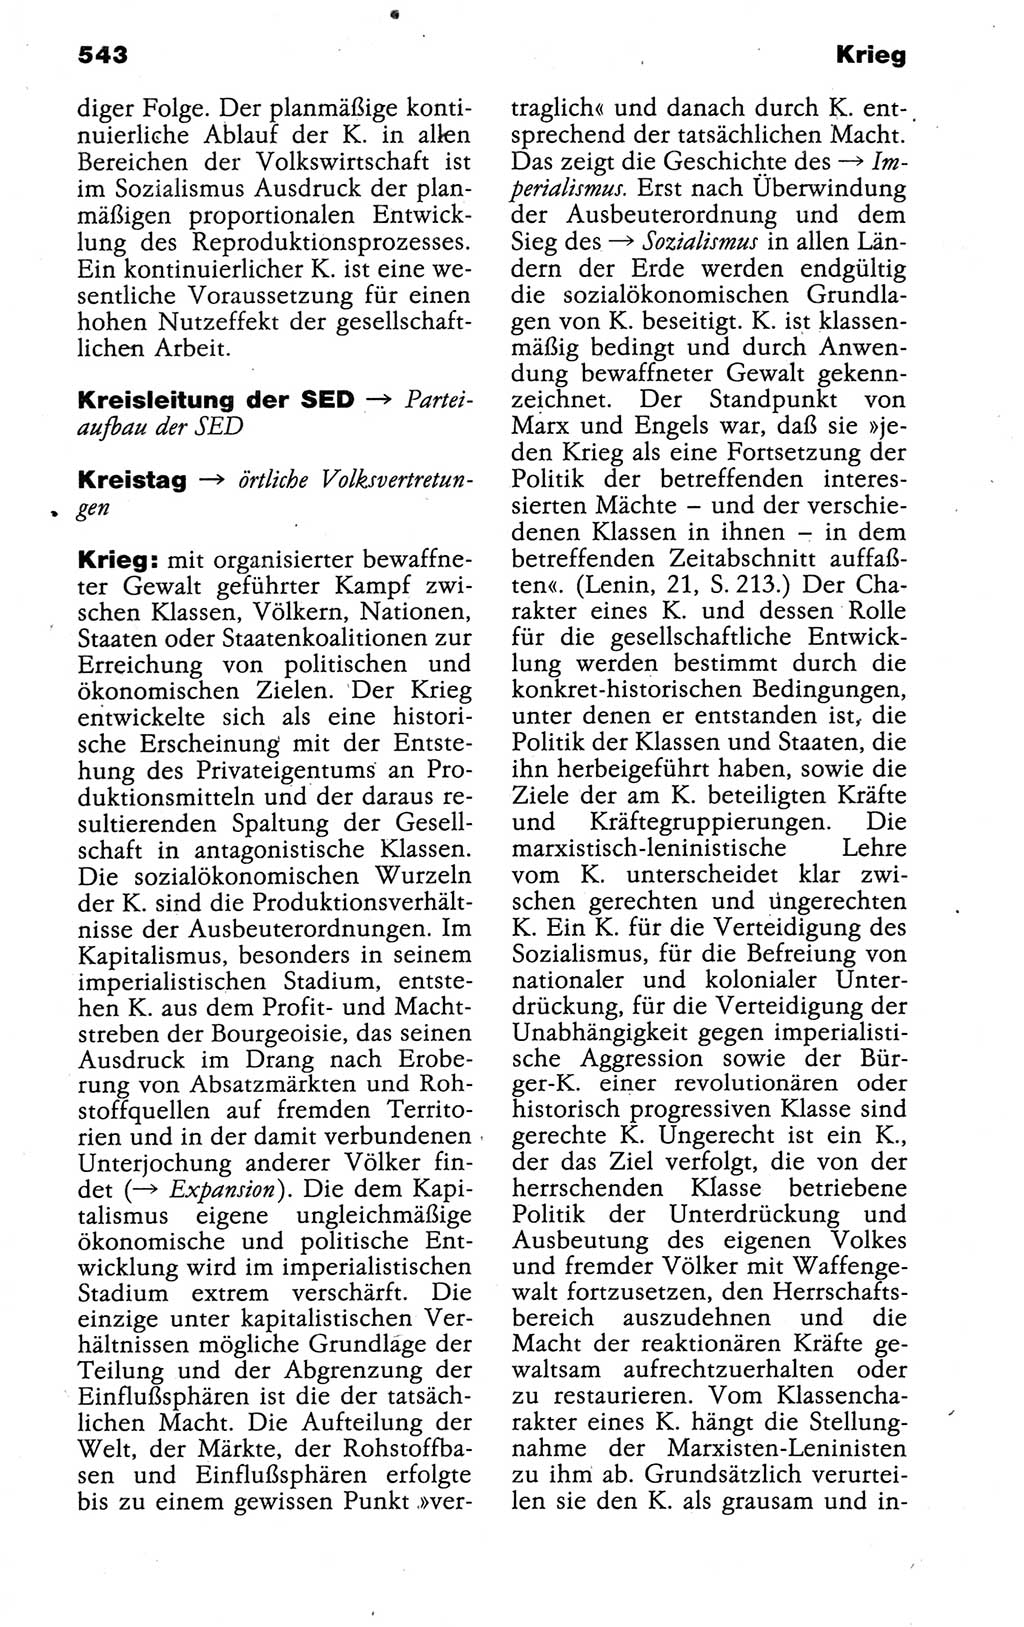 Kleines politisches Wörterbuch [Deutsche Demokratische Republik (DDR)] 1988, Seite 543 (Kl. pol. Wb. DDR 1988, S. 543)